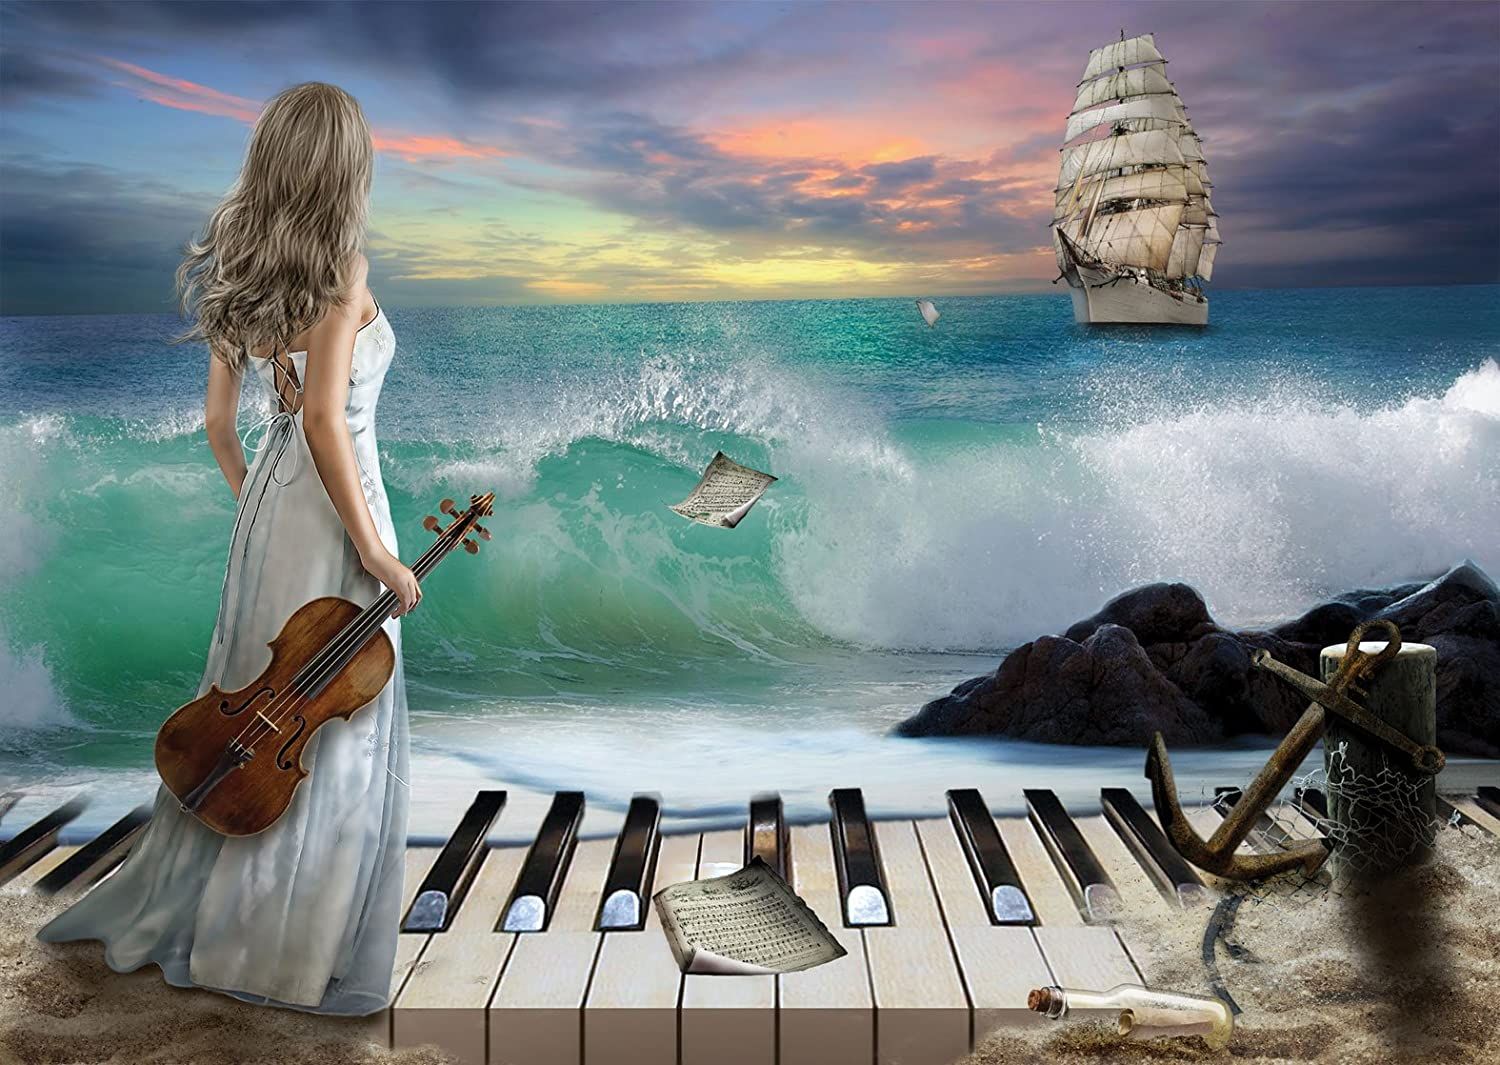 Музыка для души популярные. Девушка скрипка море. Музыкальный пейзаж. Девушка со скрипкой на берегу моря. Картины Вдохновение.